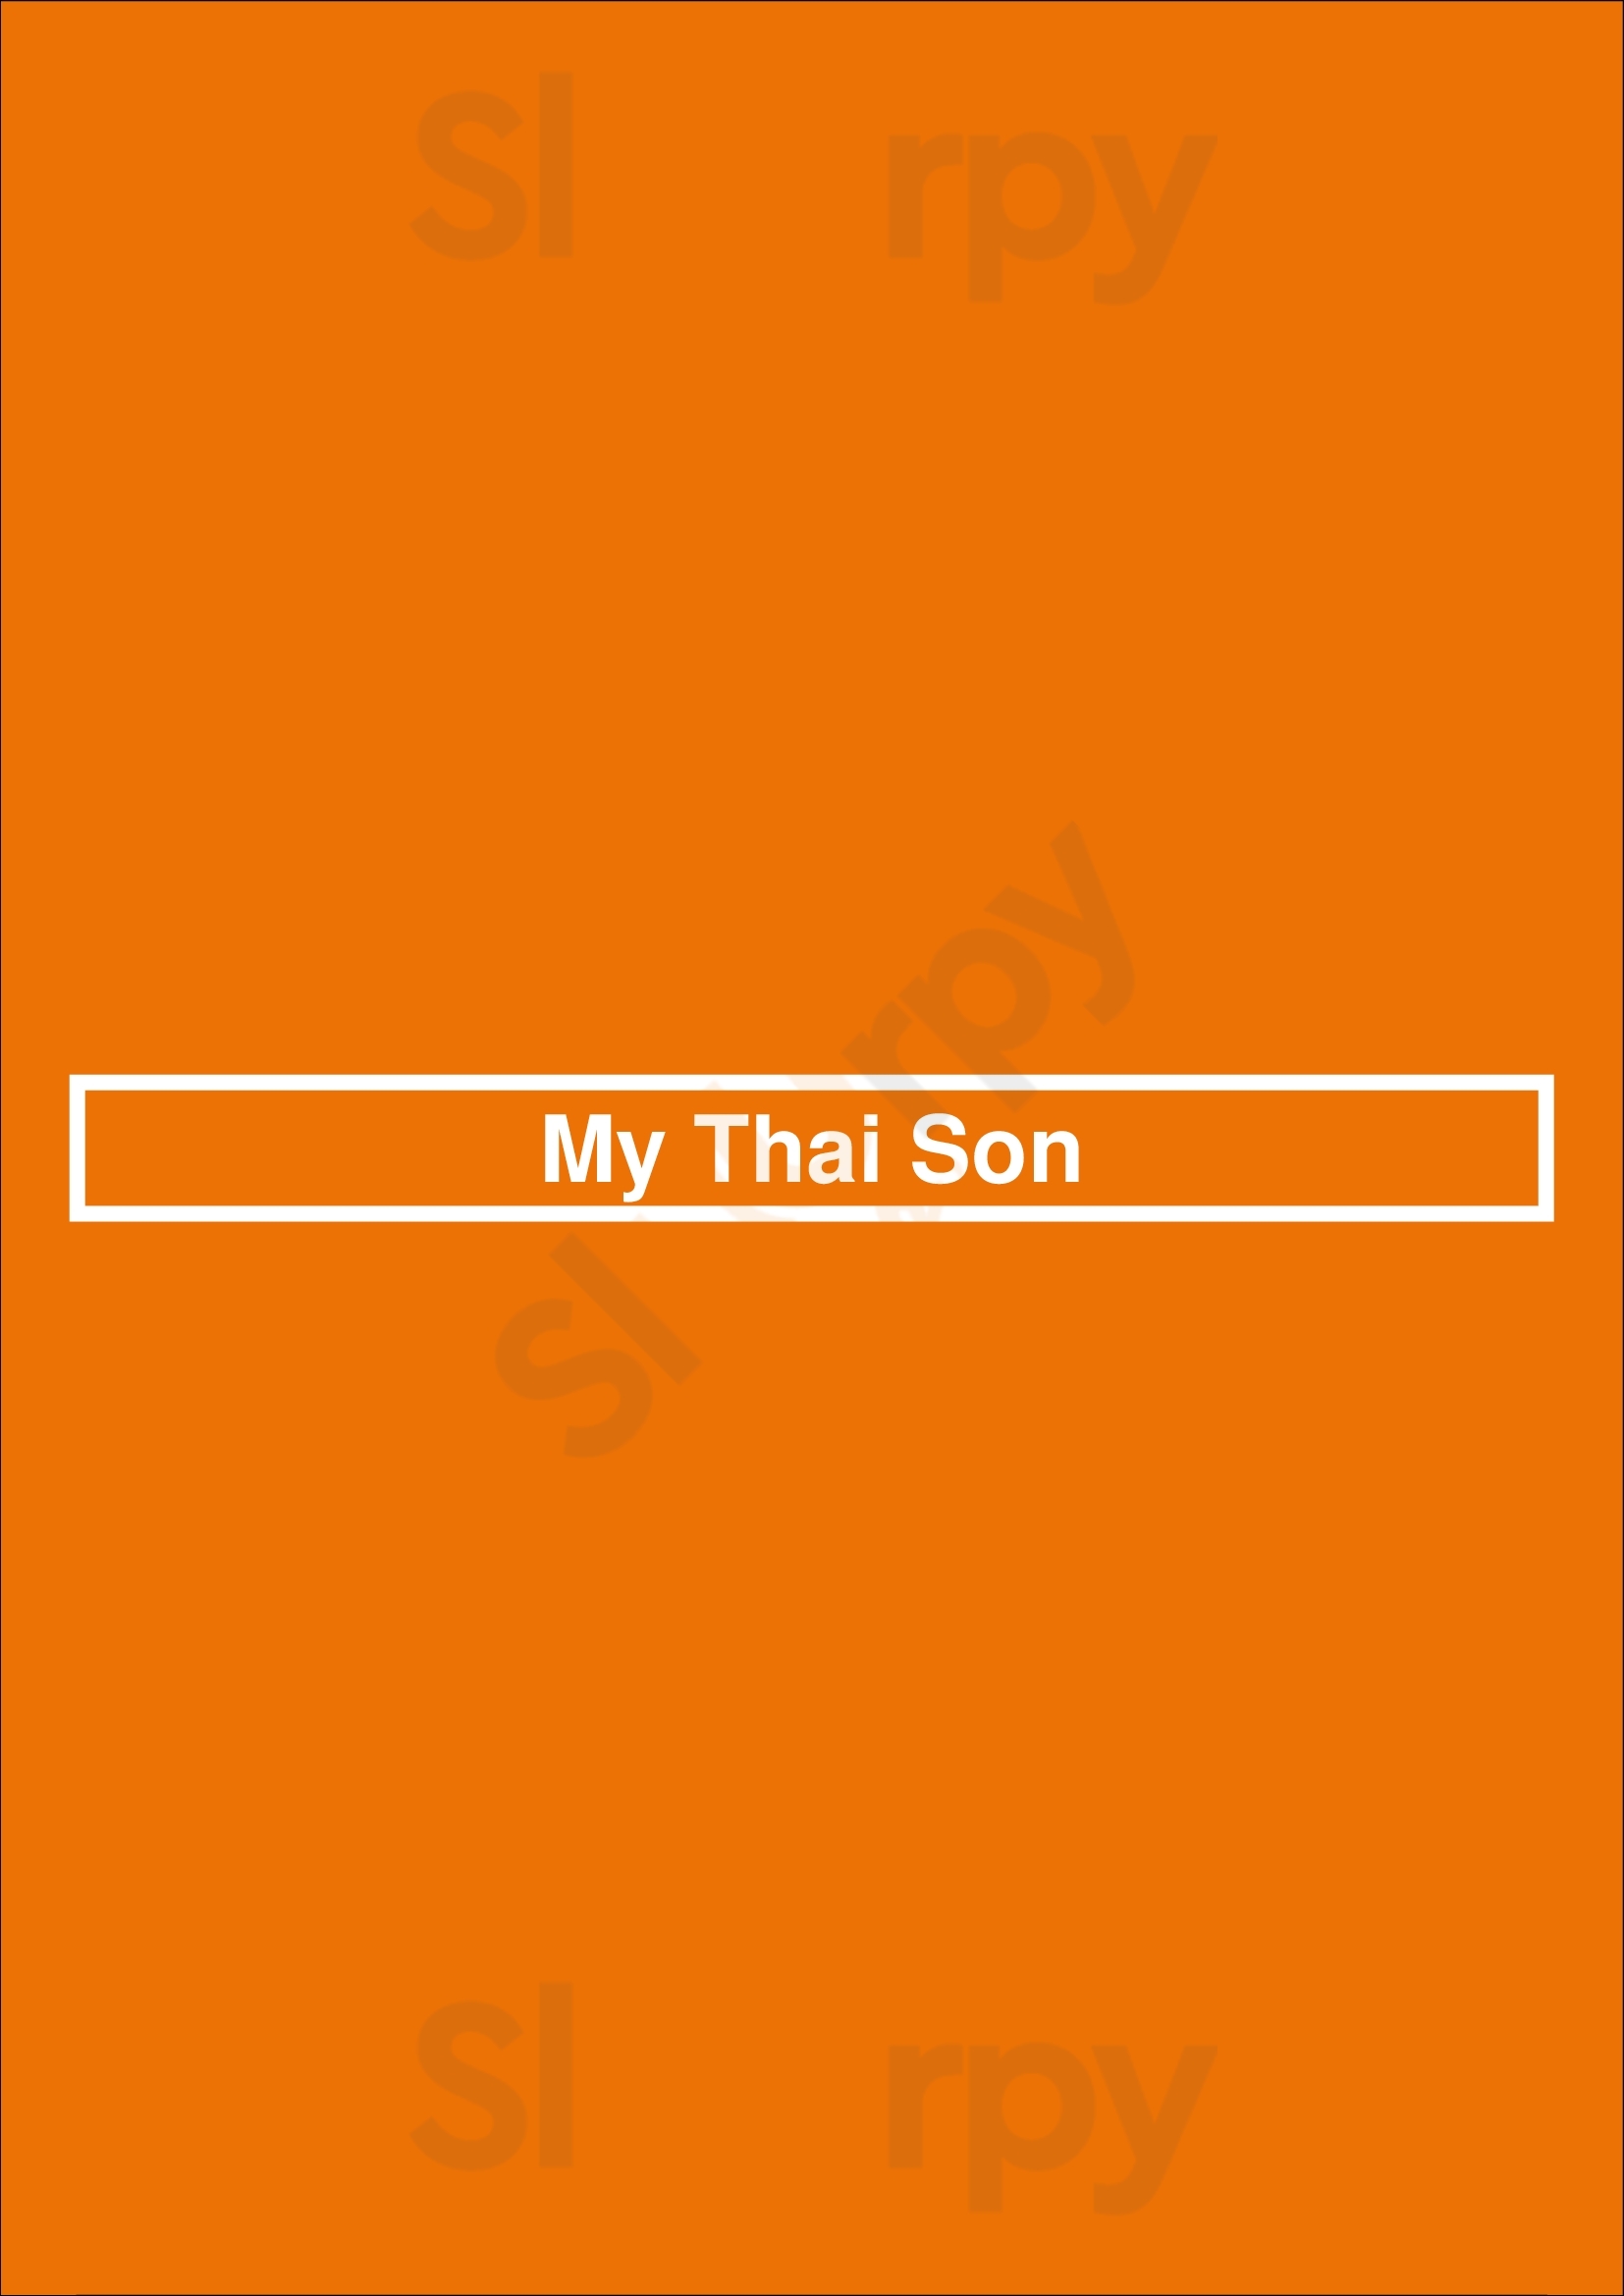 My Thai Son Rotterdam Menu - 1